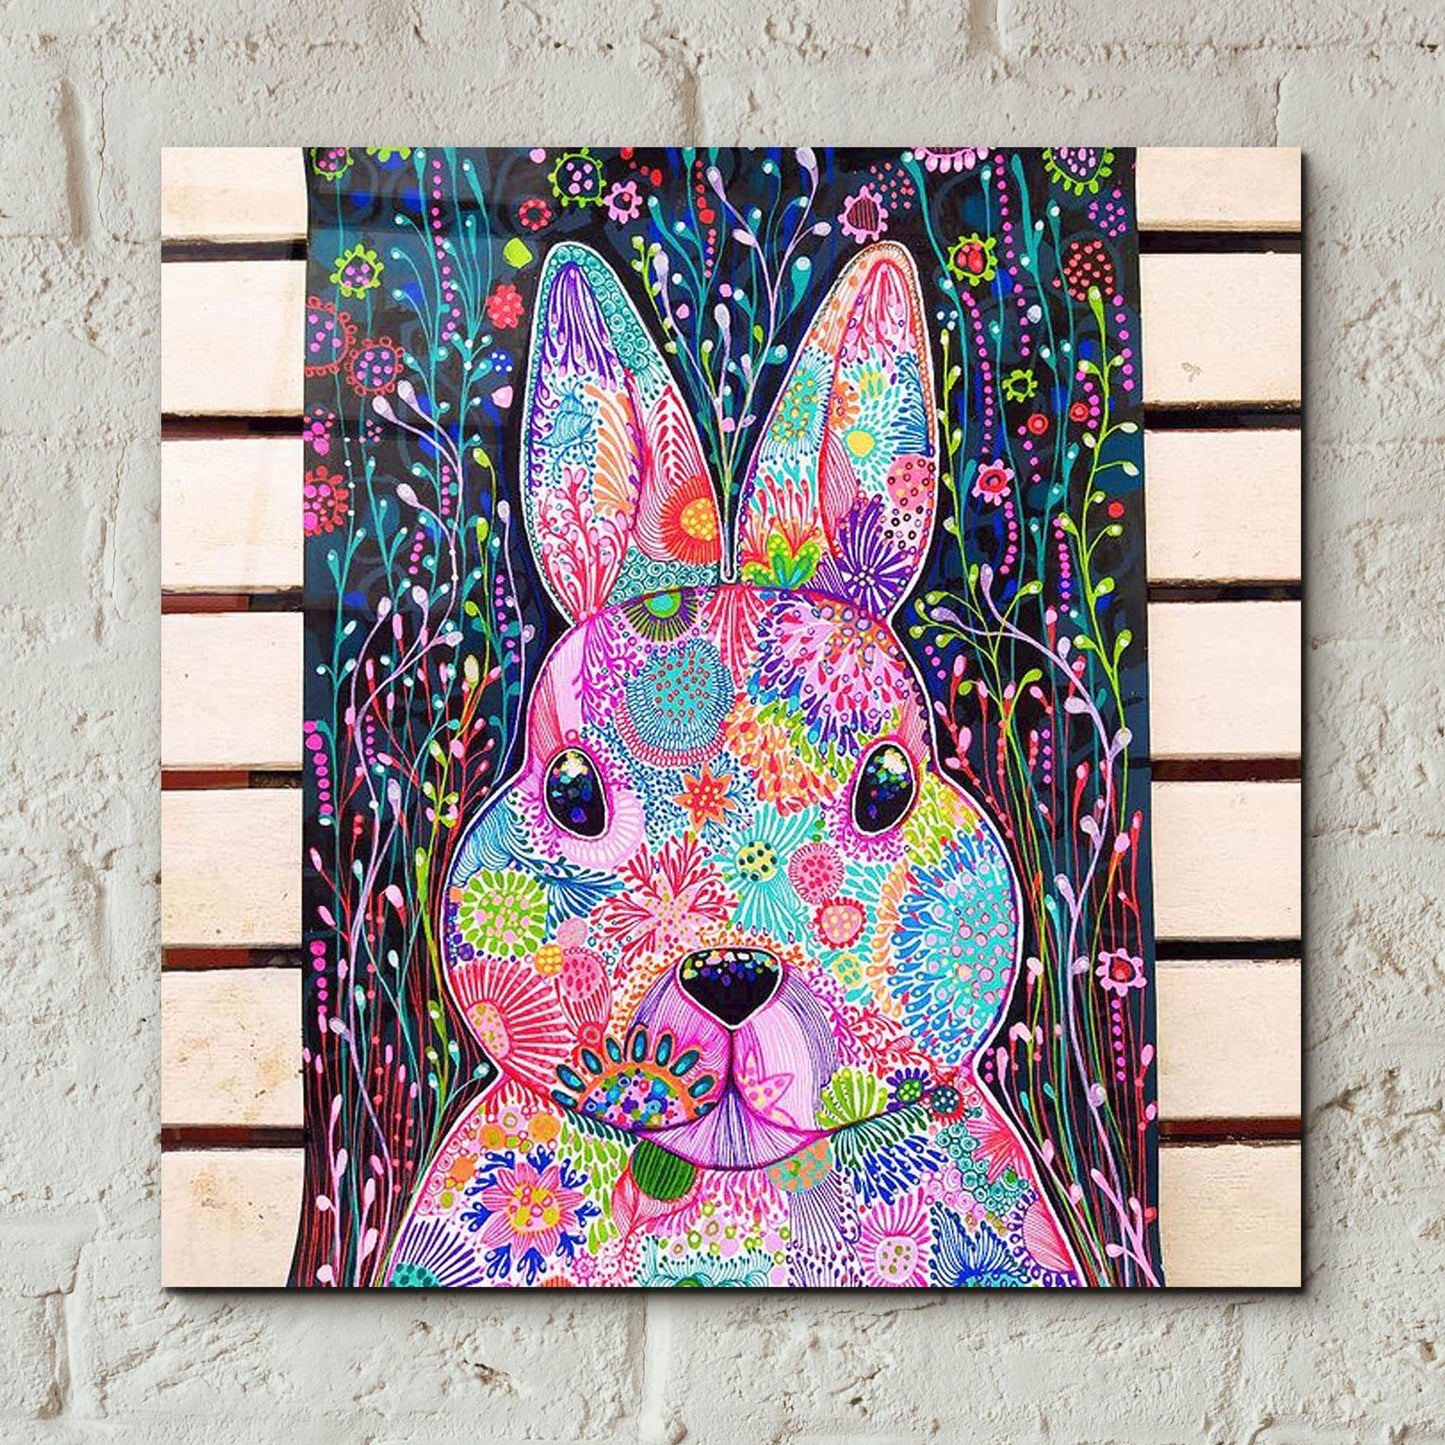 Epic Art 'Bunny2 by Noemi Ibarz, Acrylic Glass Wall Art,12x12